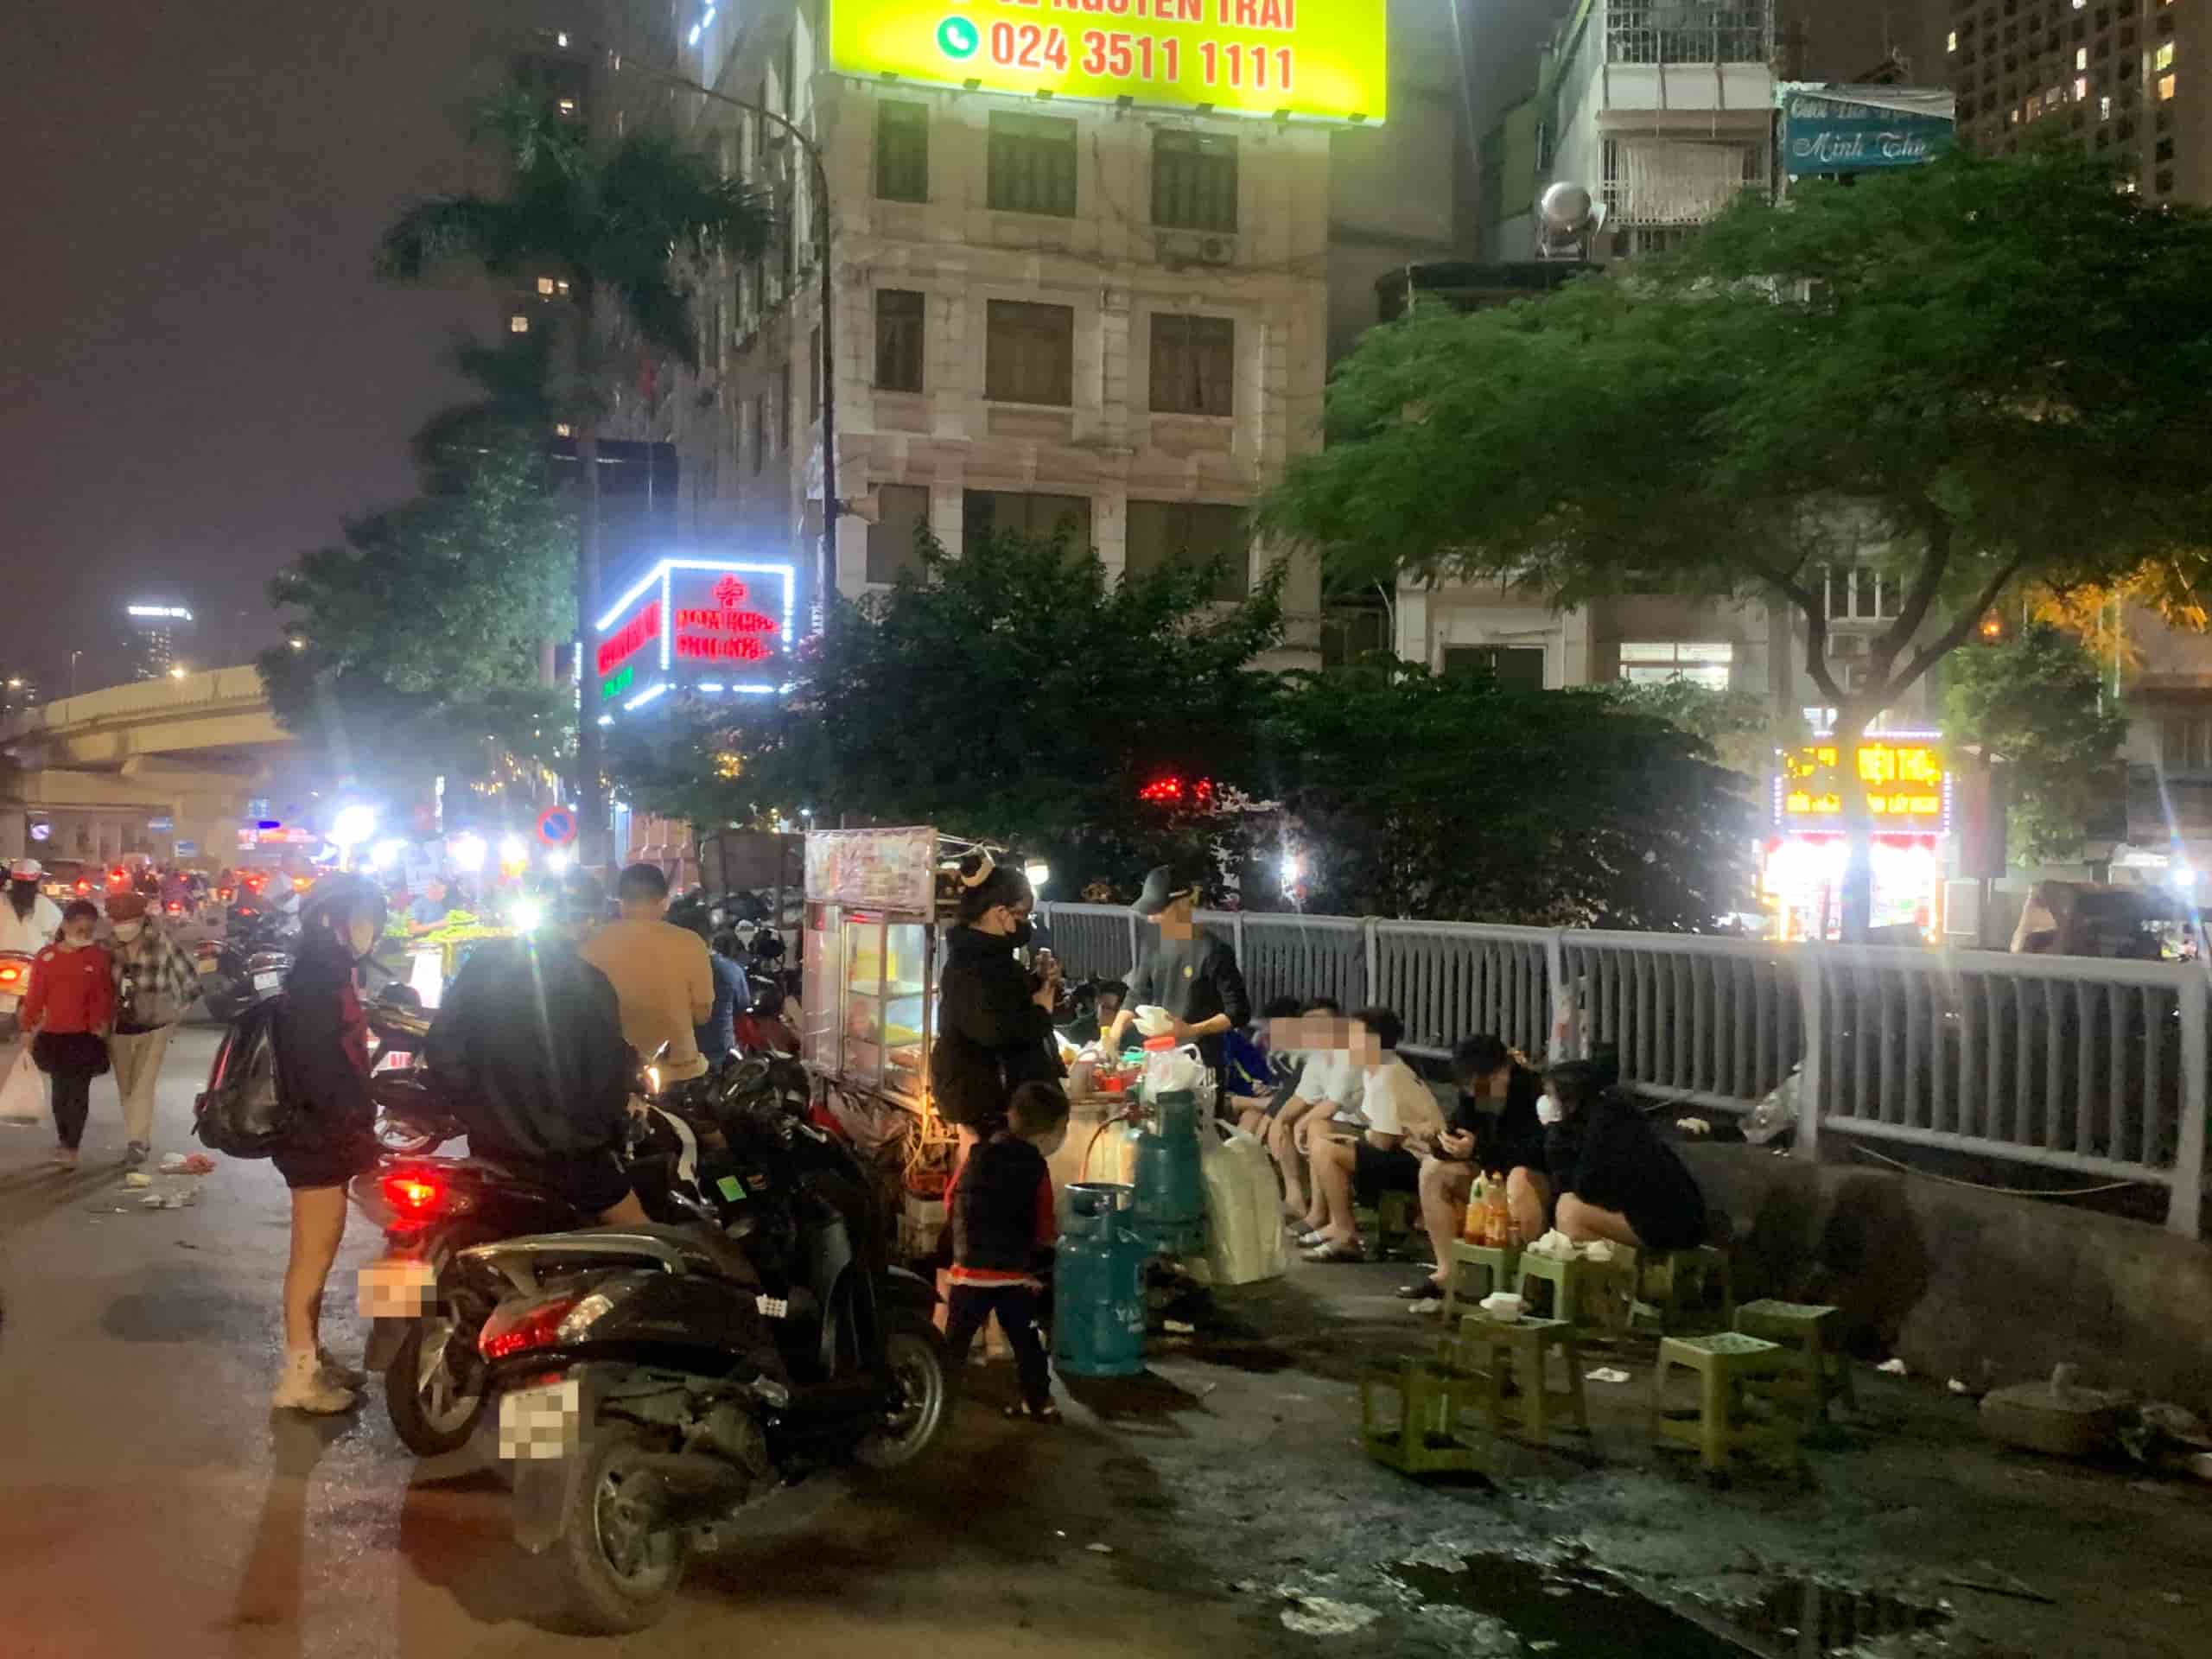 Tại Cầu Mới (Nguyễn Trãi, Thanh Xuân, Hà Nội), các hàng quán nối tiếp nhau gây mất mỹ quan đô thị, không đảm bảo trật tự an ninh khu vực. Ảnh: Nhật Minh